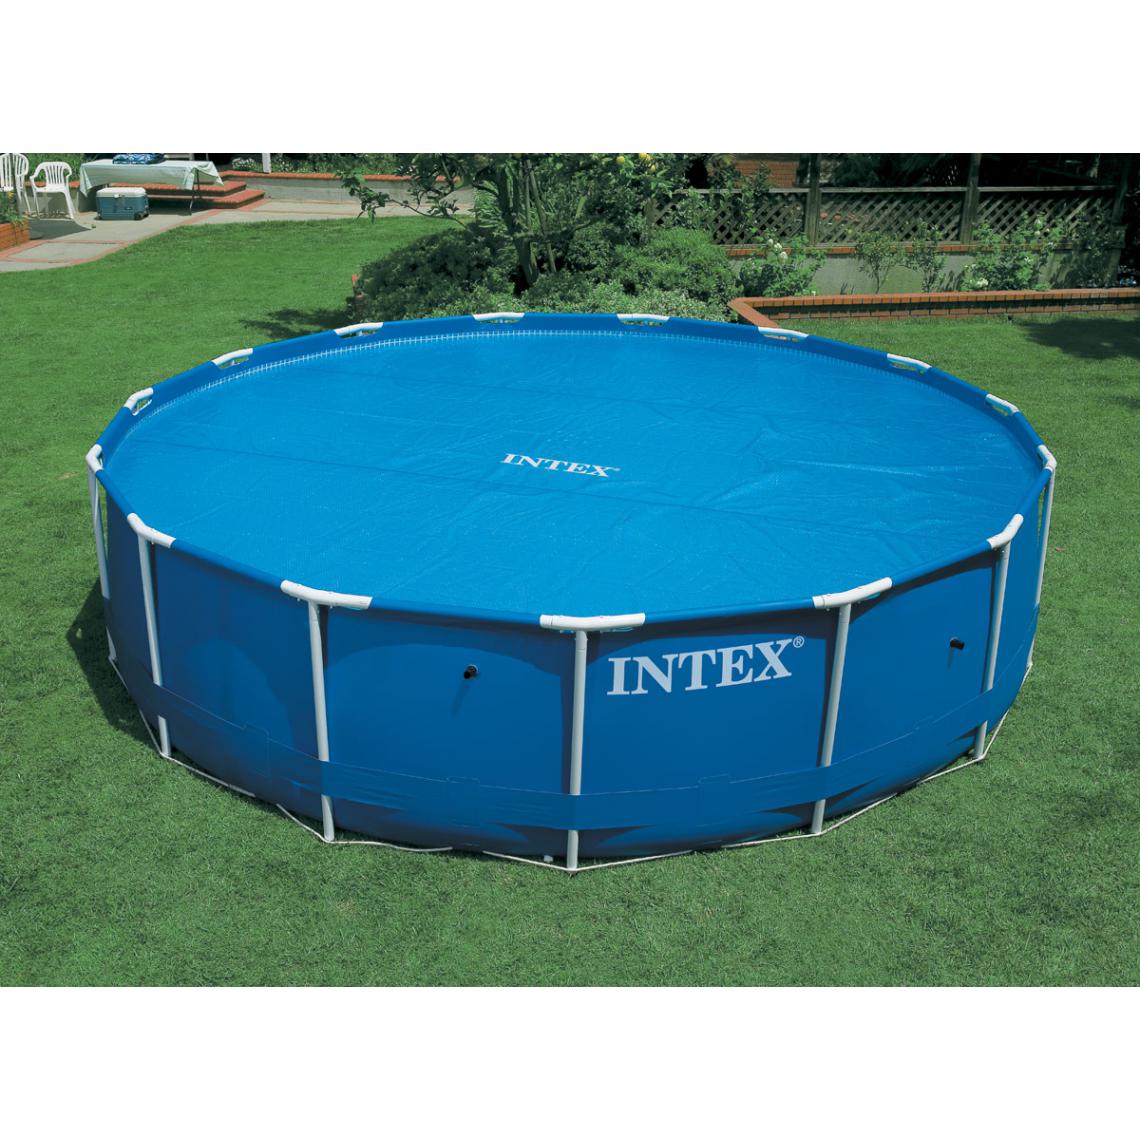 Intex - Bâche à bulles pour piscine Ø 5,49 m - Intex - Bâche de piscine